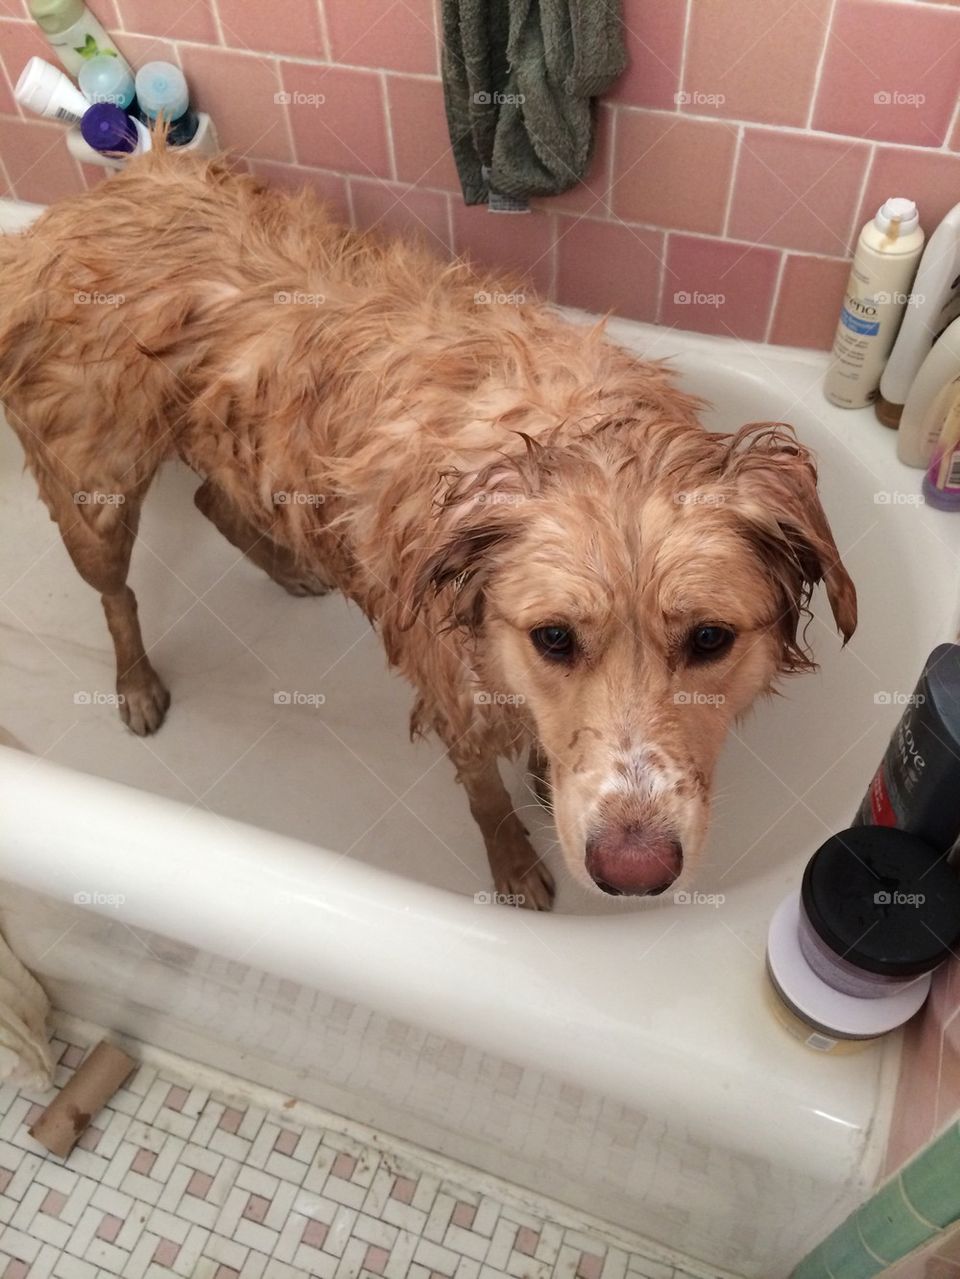 Dog bath